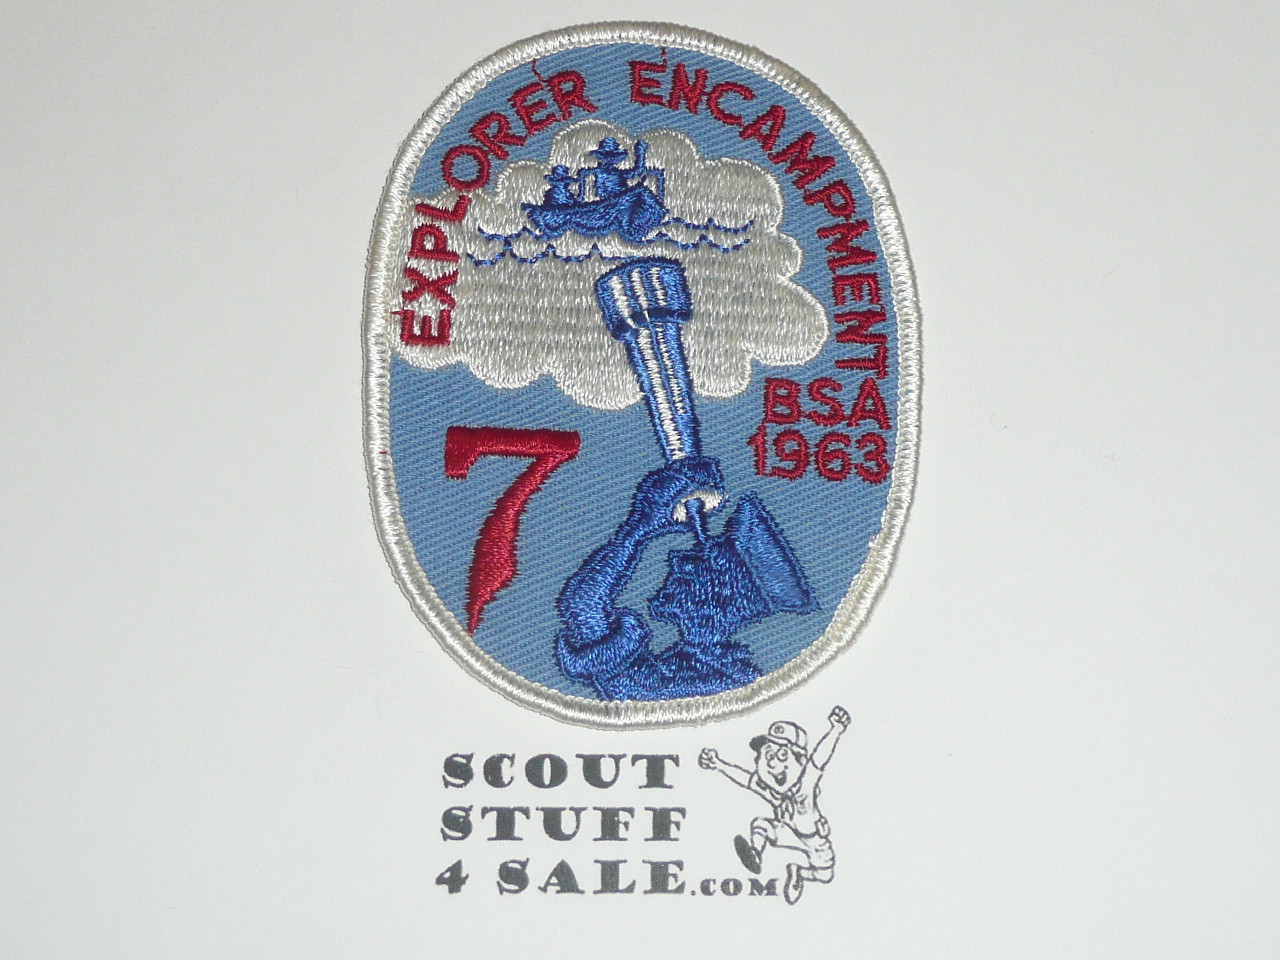 Region 7 1963 Explorer Encampment Twill Patch - Boy Scout